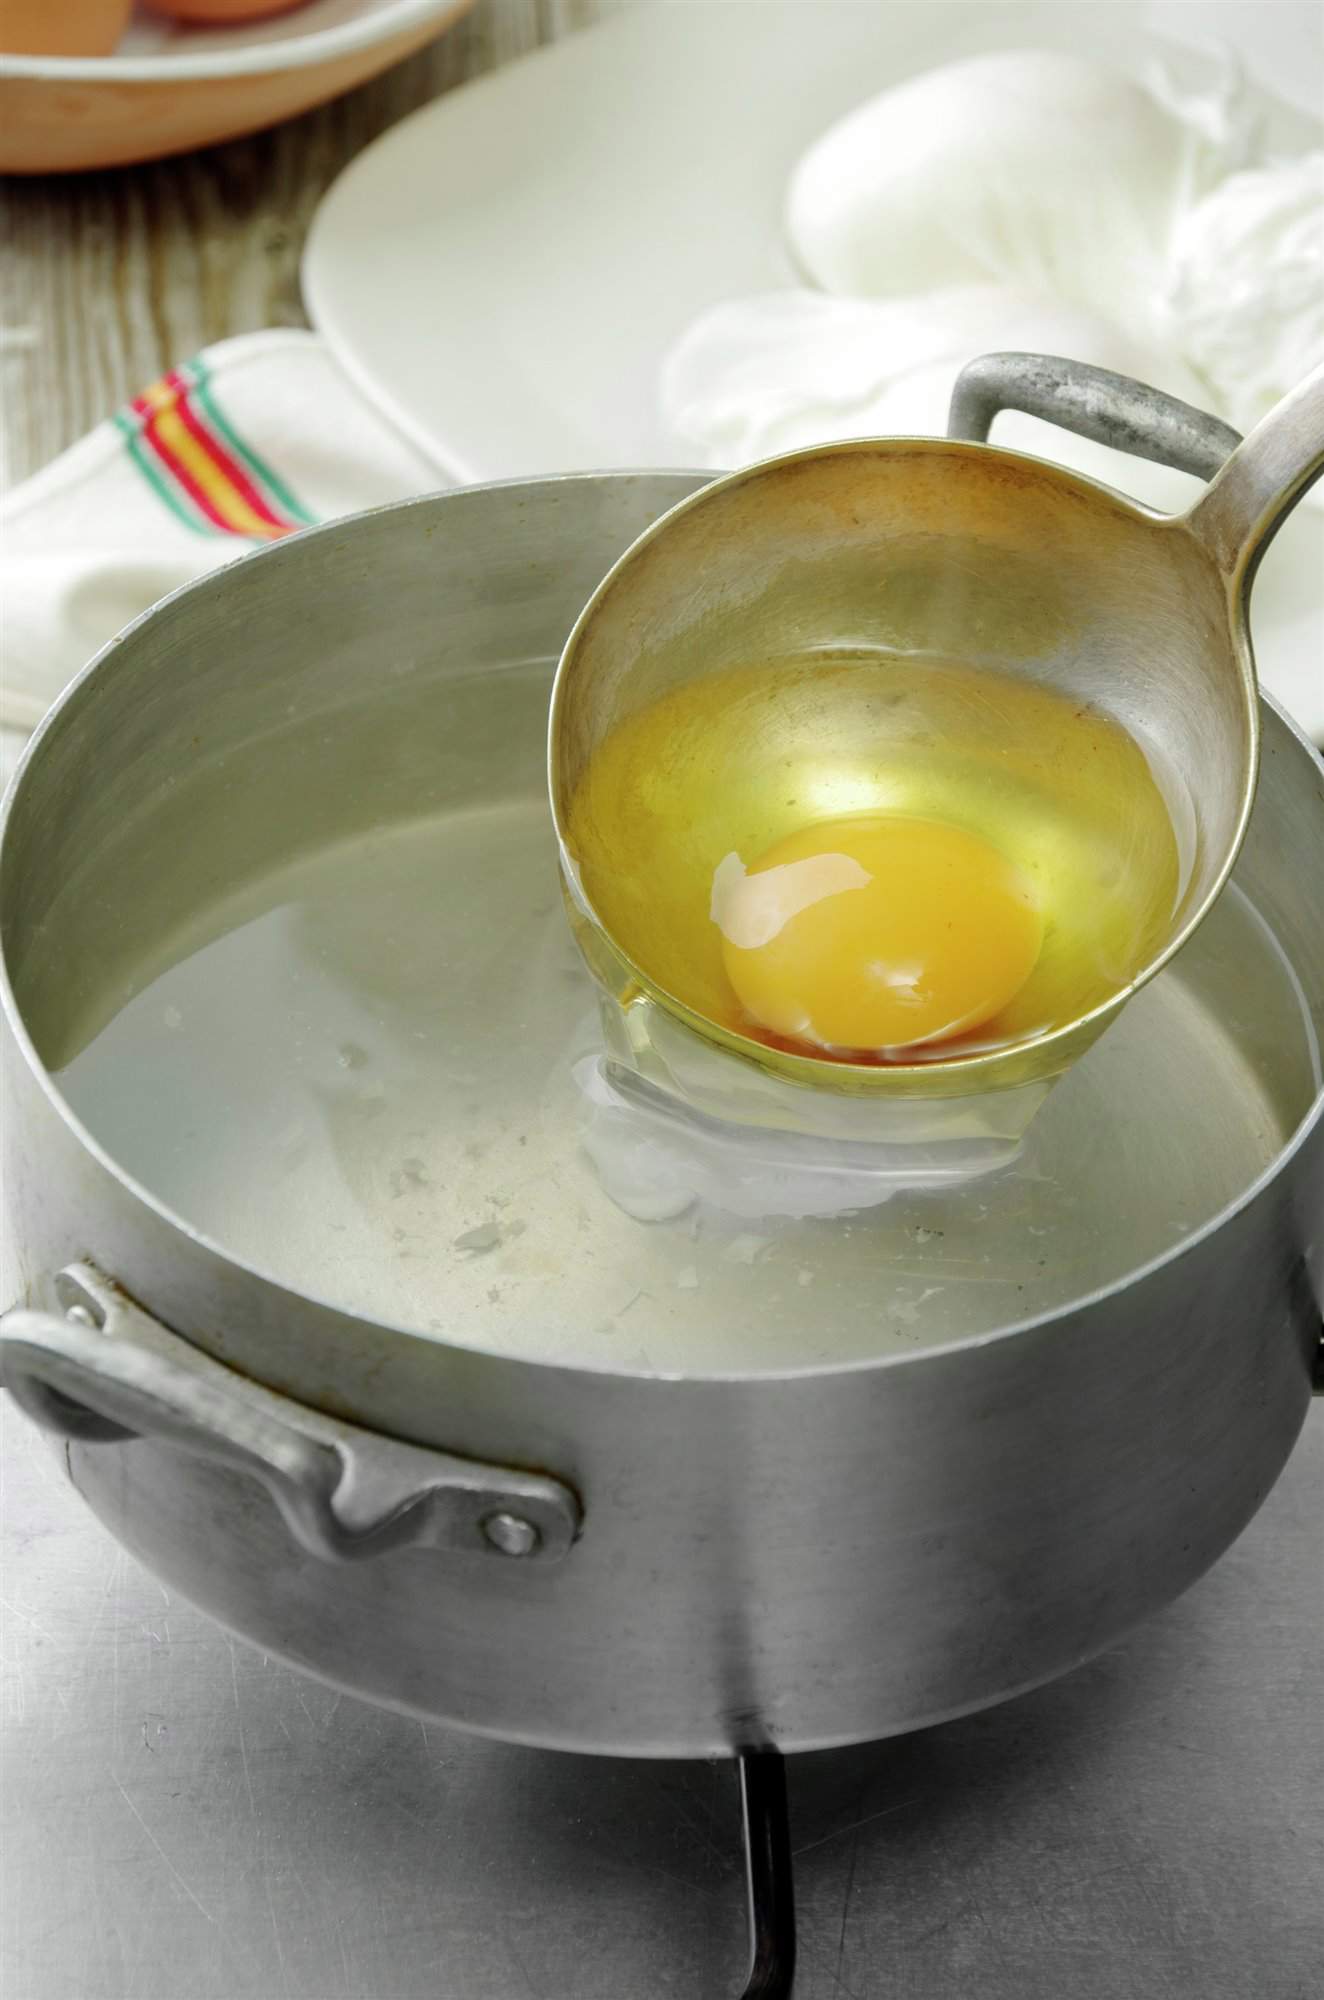 2. Prepara el huevo poché